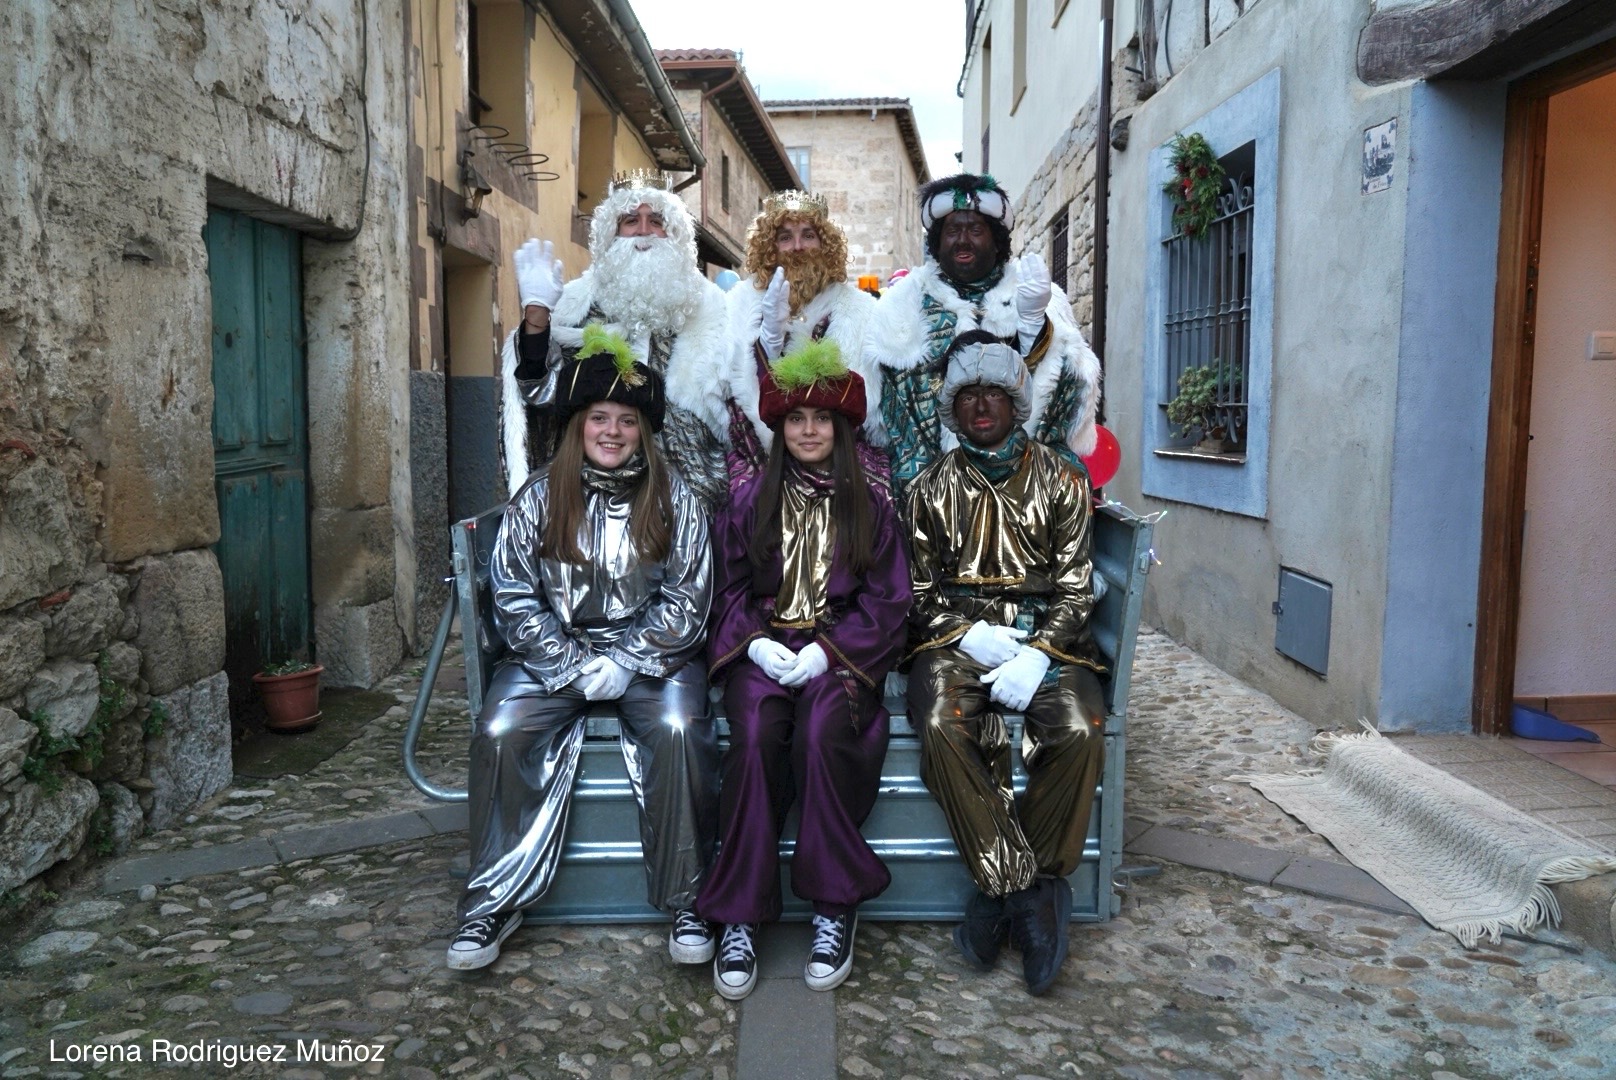 Fotografía de los Reyes magos junto a los Pajes encima de la carroza.